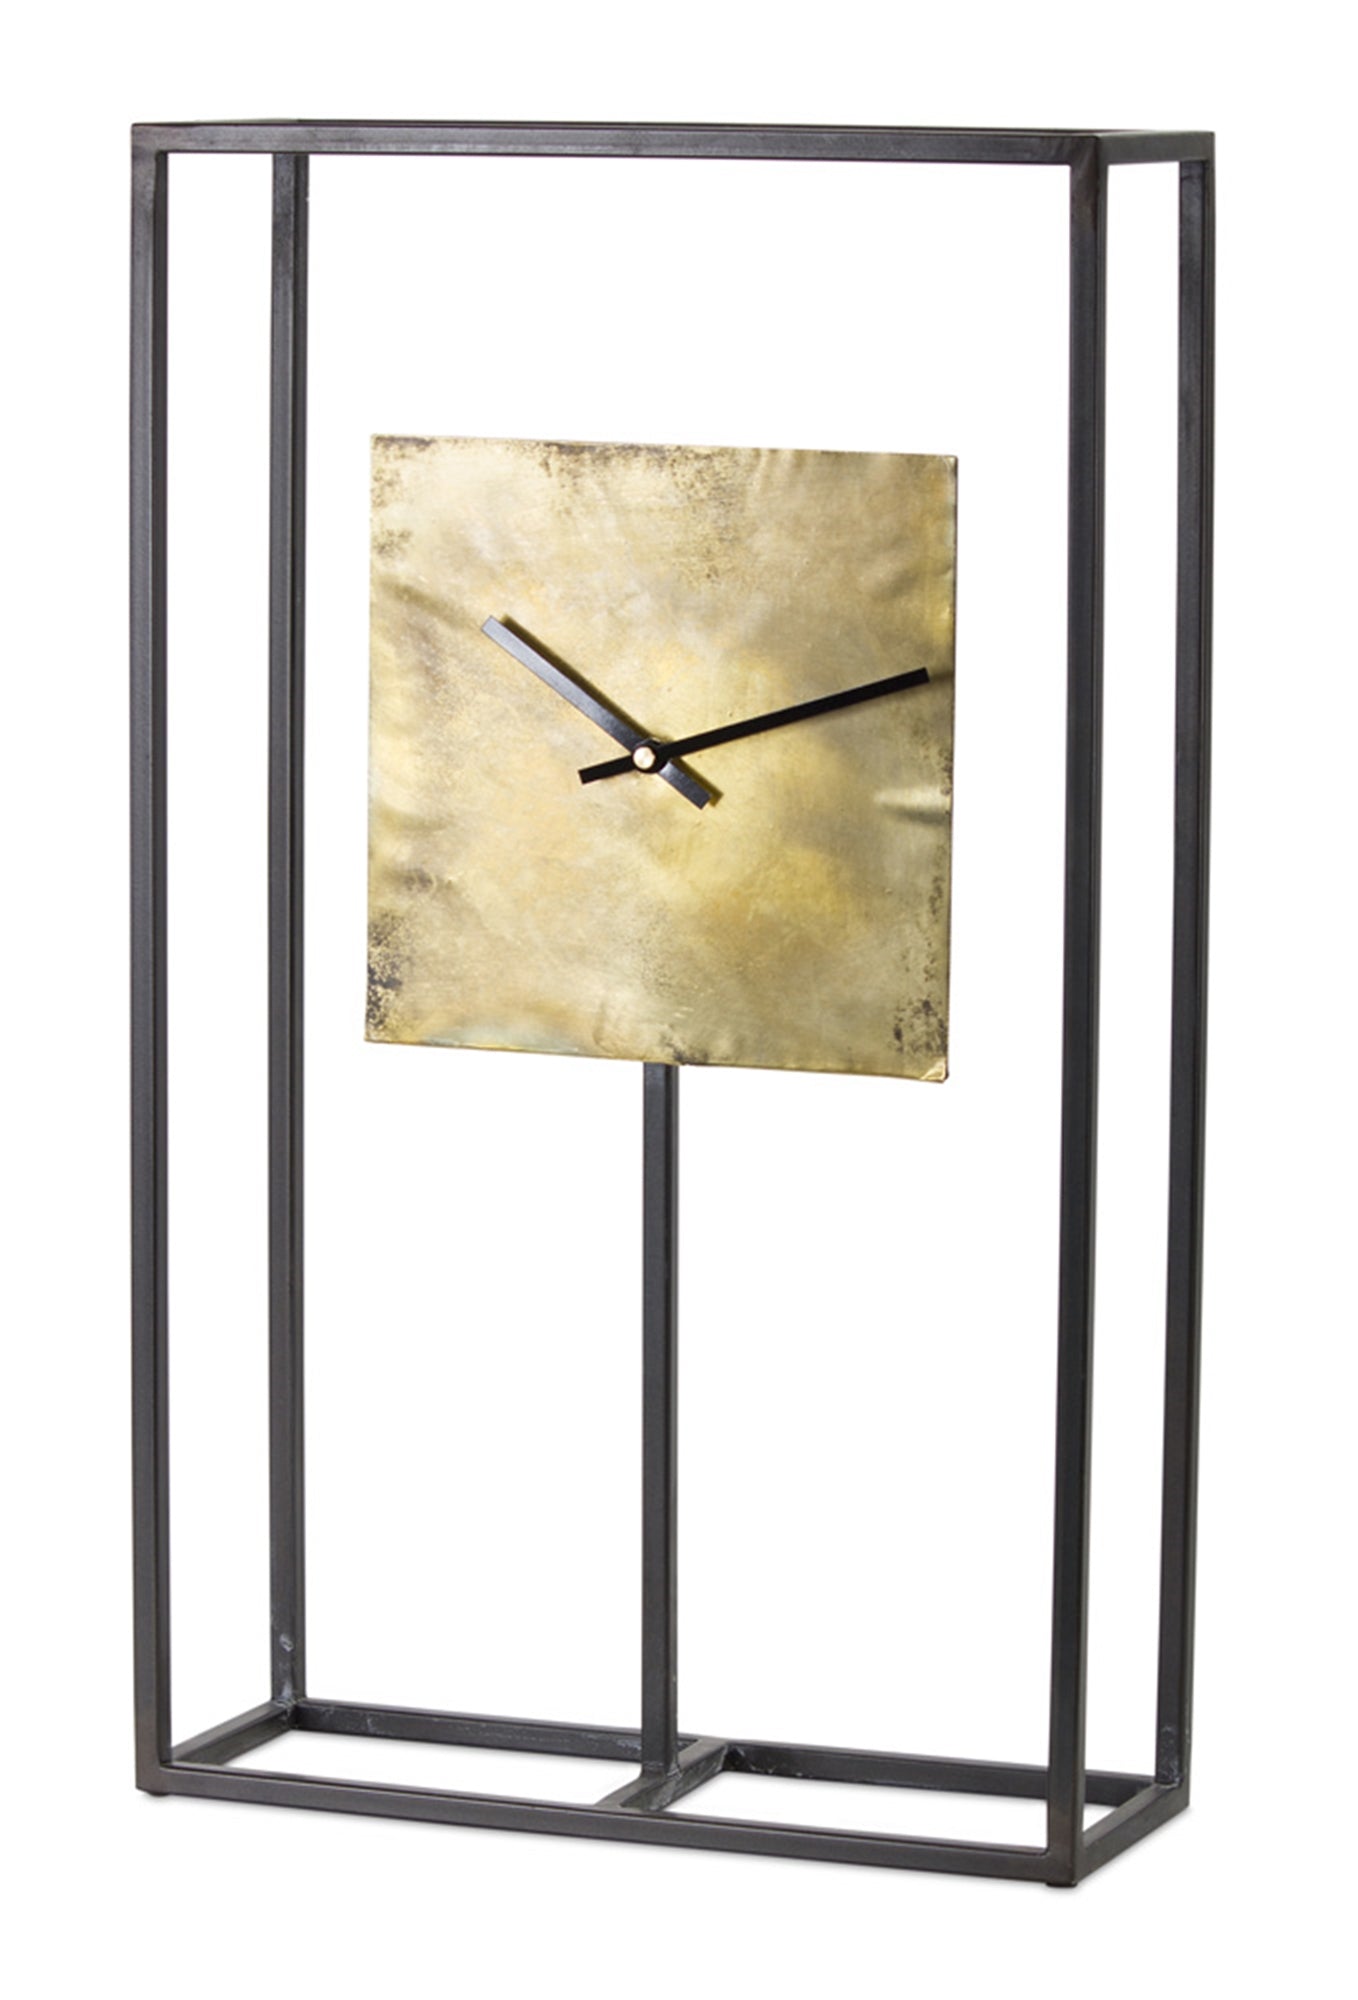 Clock 13" x 21.75"H Iron/Copper